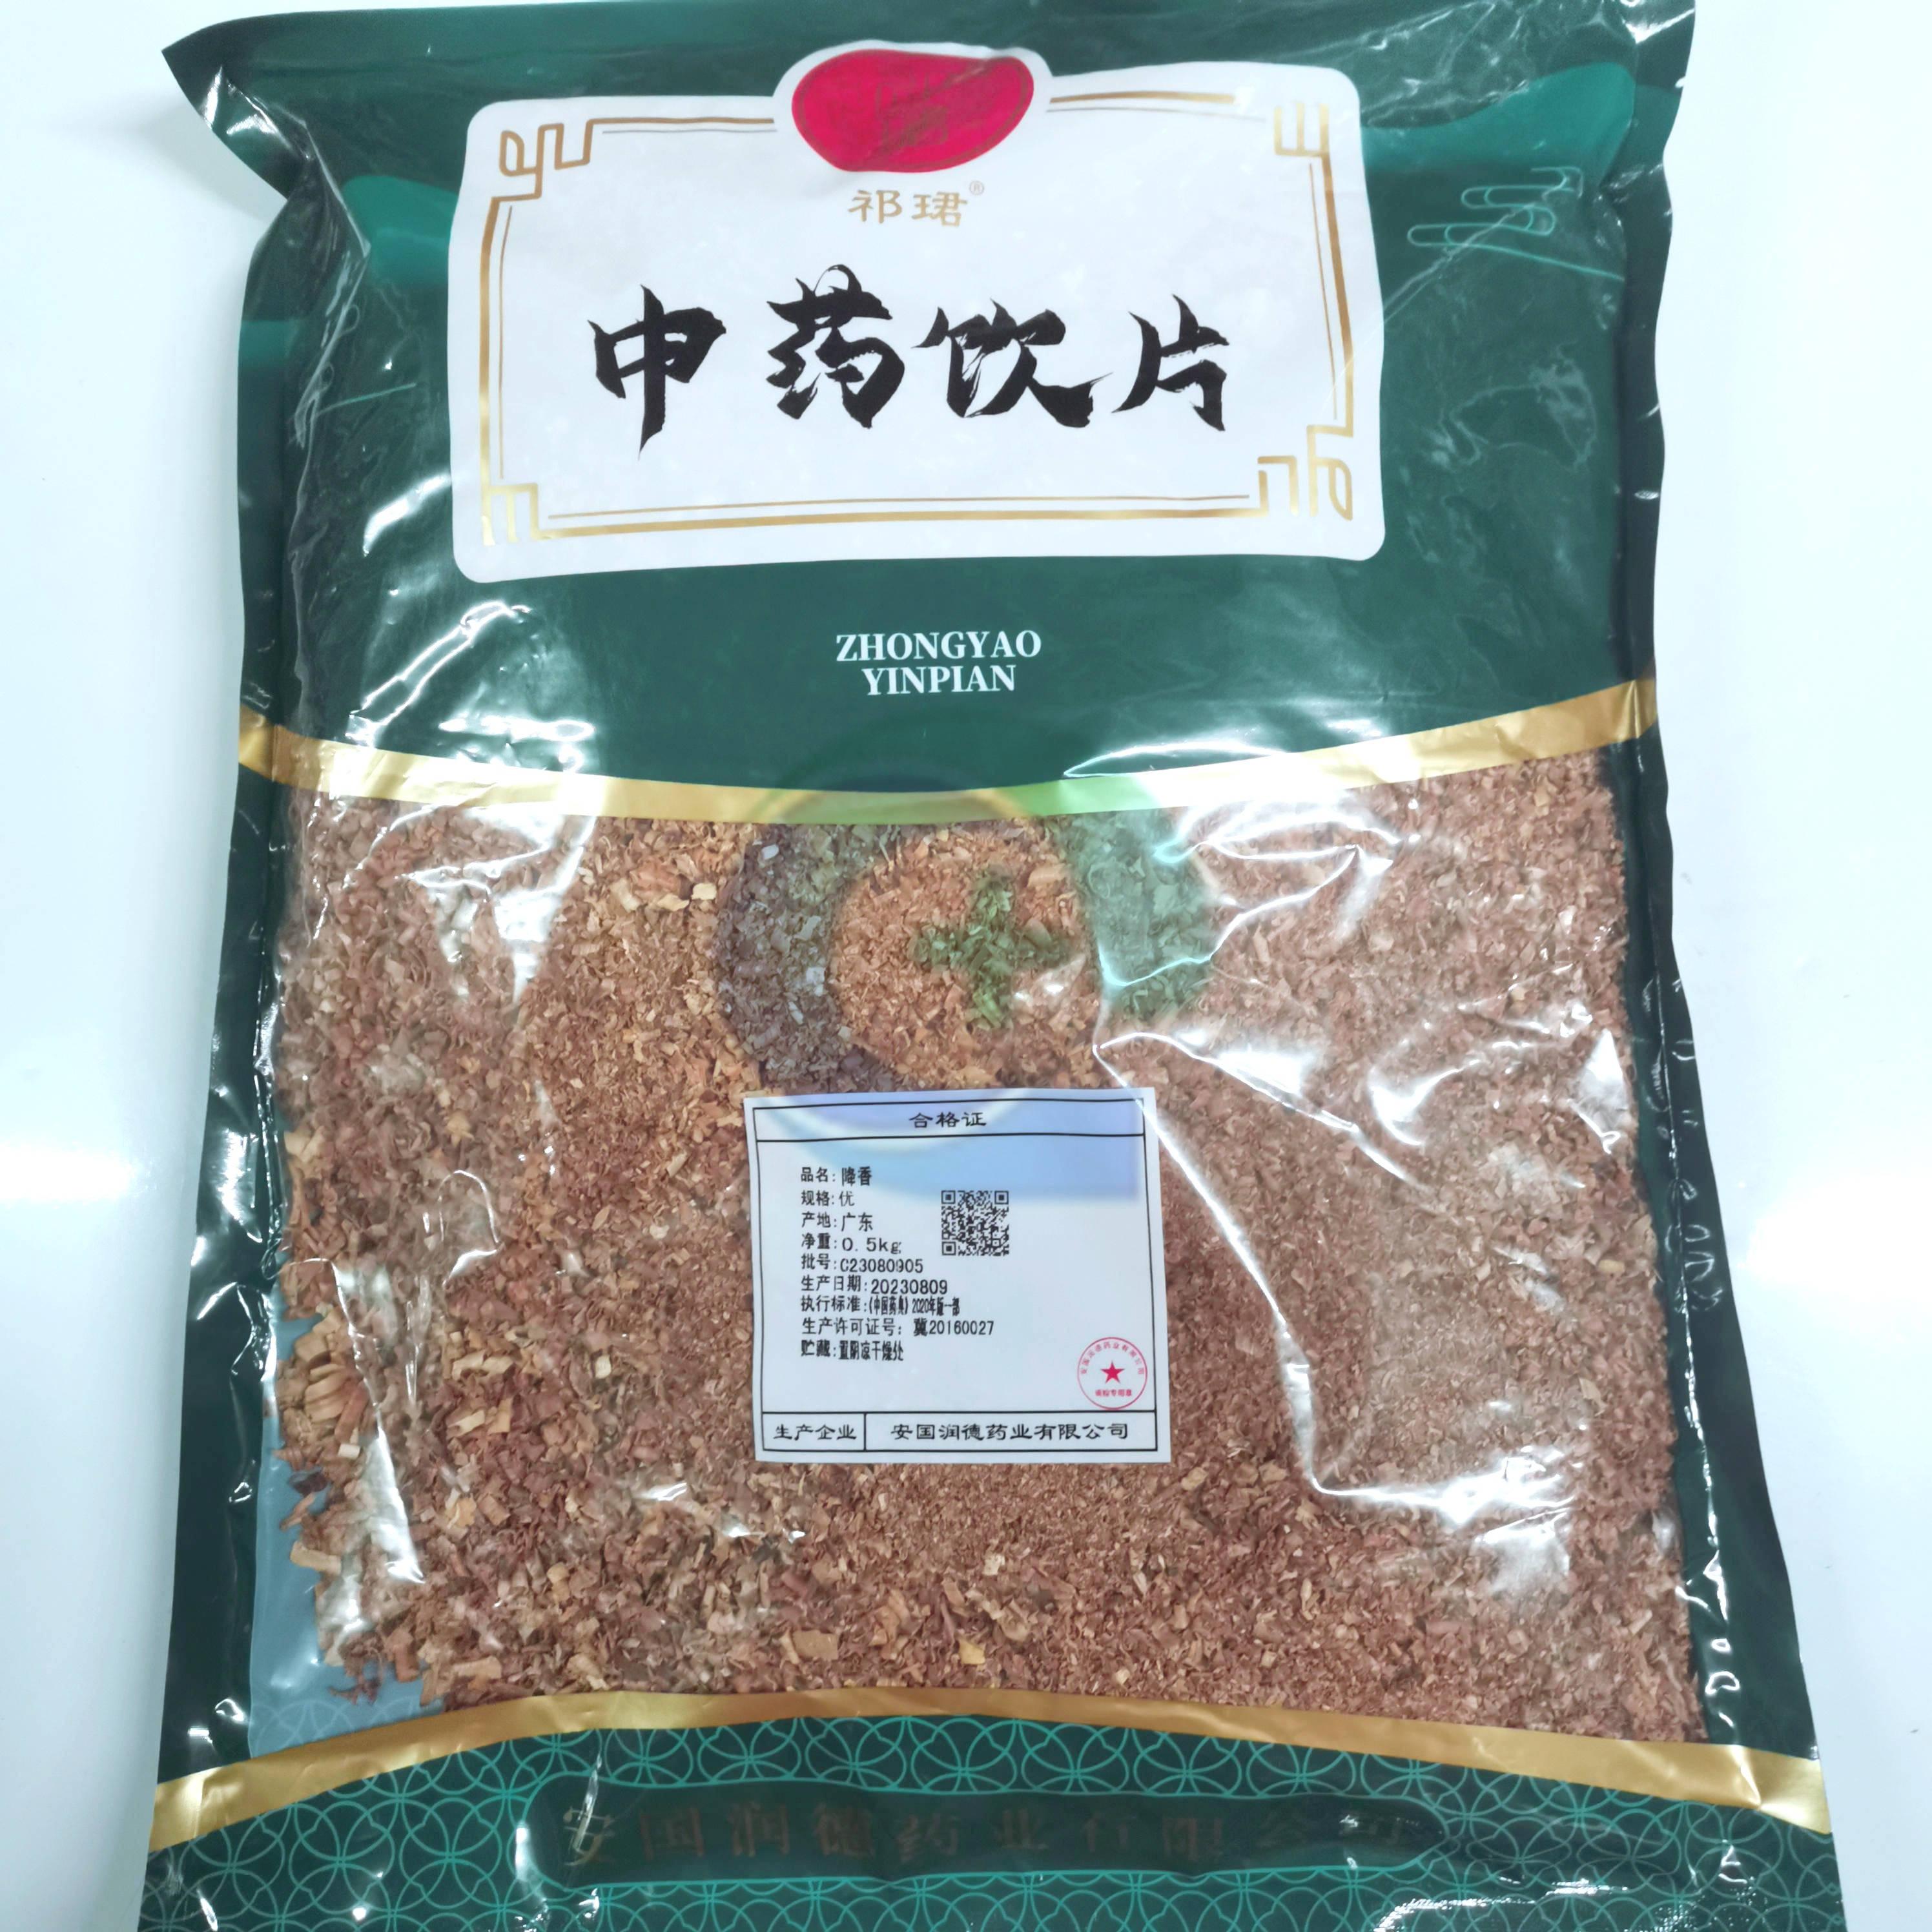 【】降香-优-0.5kg/袋-安国润德药业有限公司